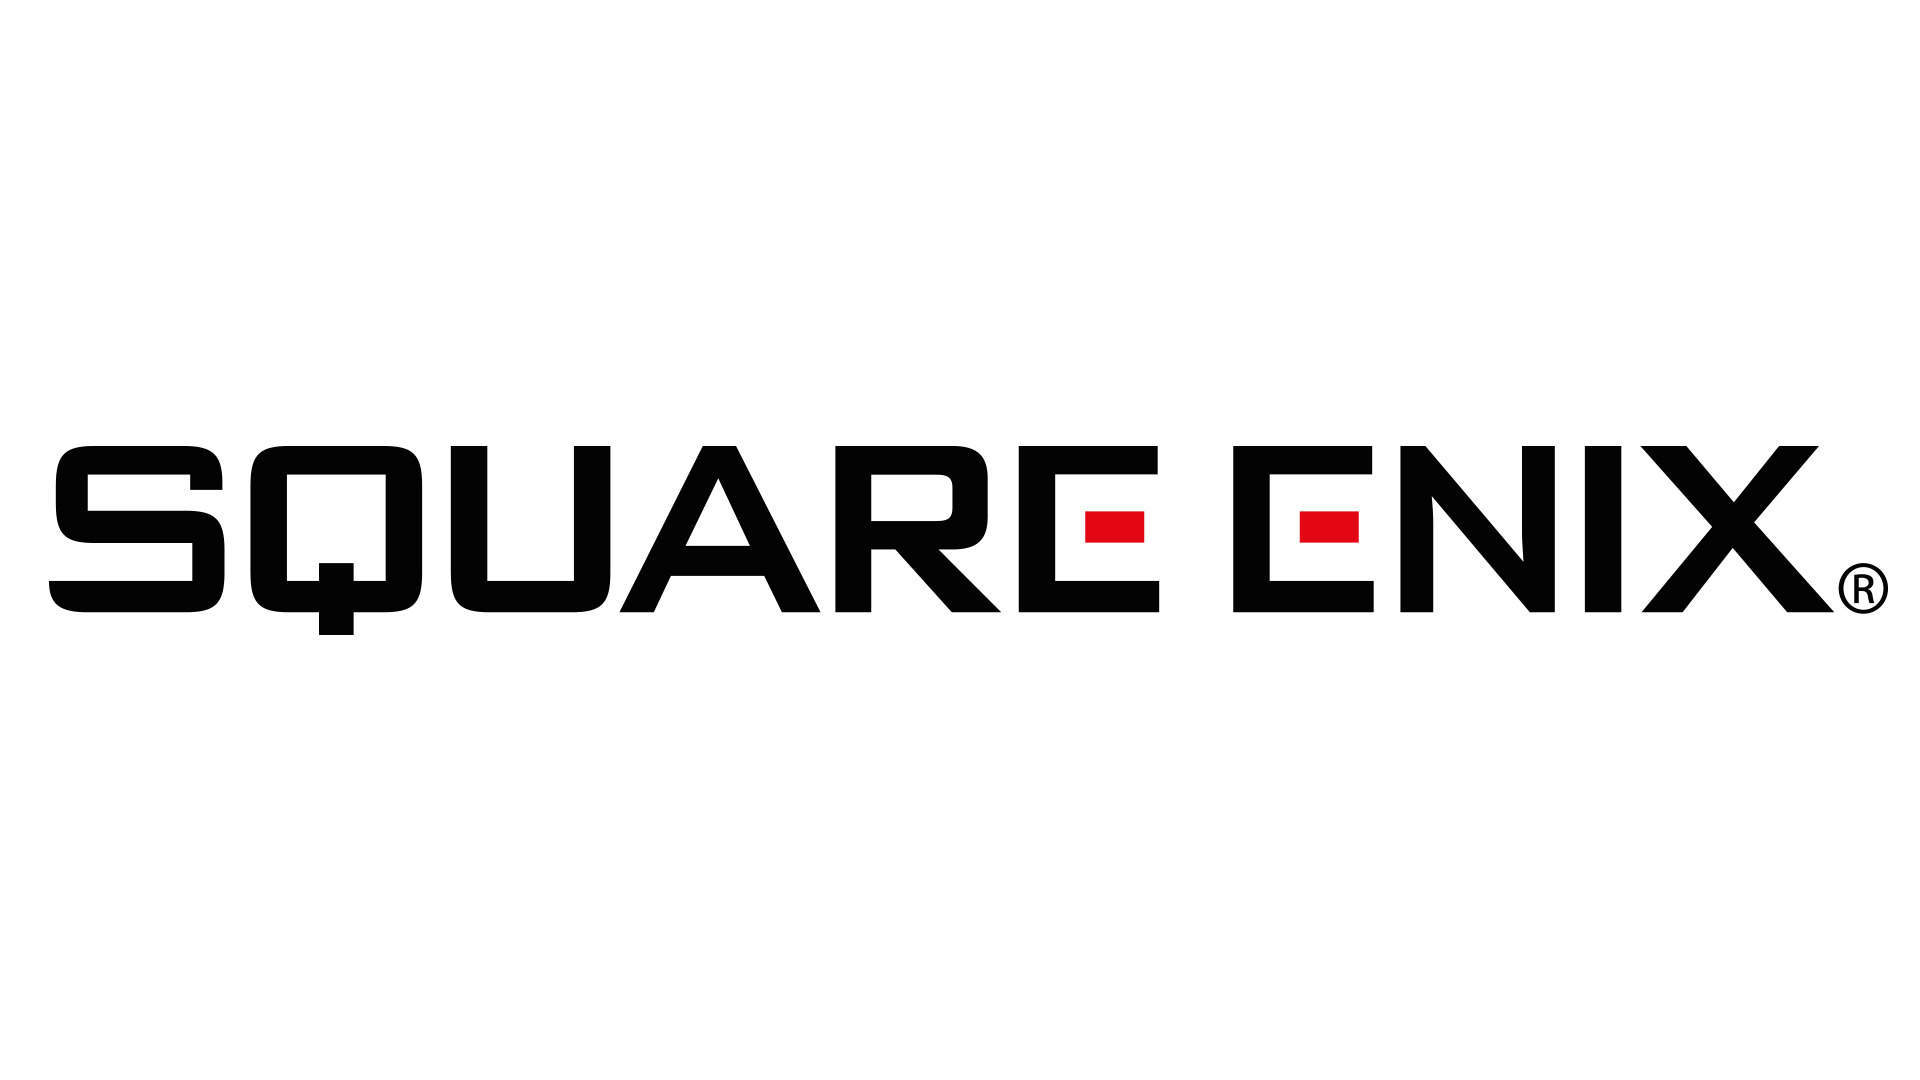 #Square Enix registriert sich Trademark zu Unnumbered